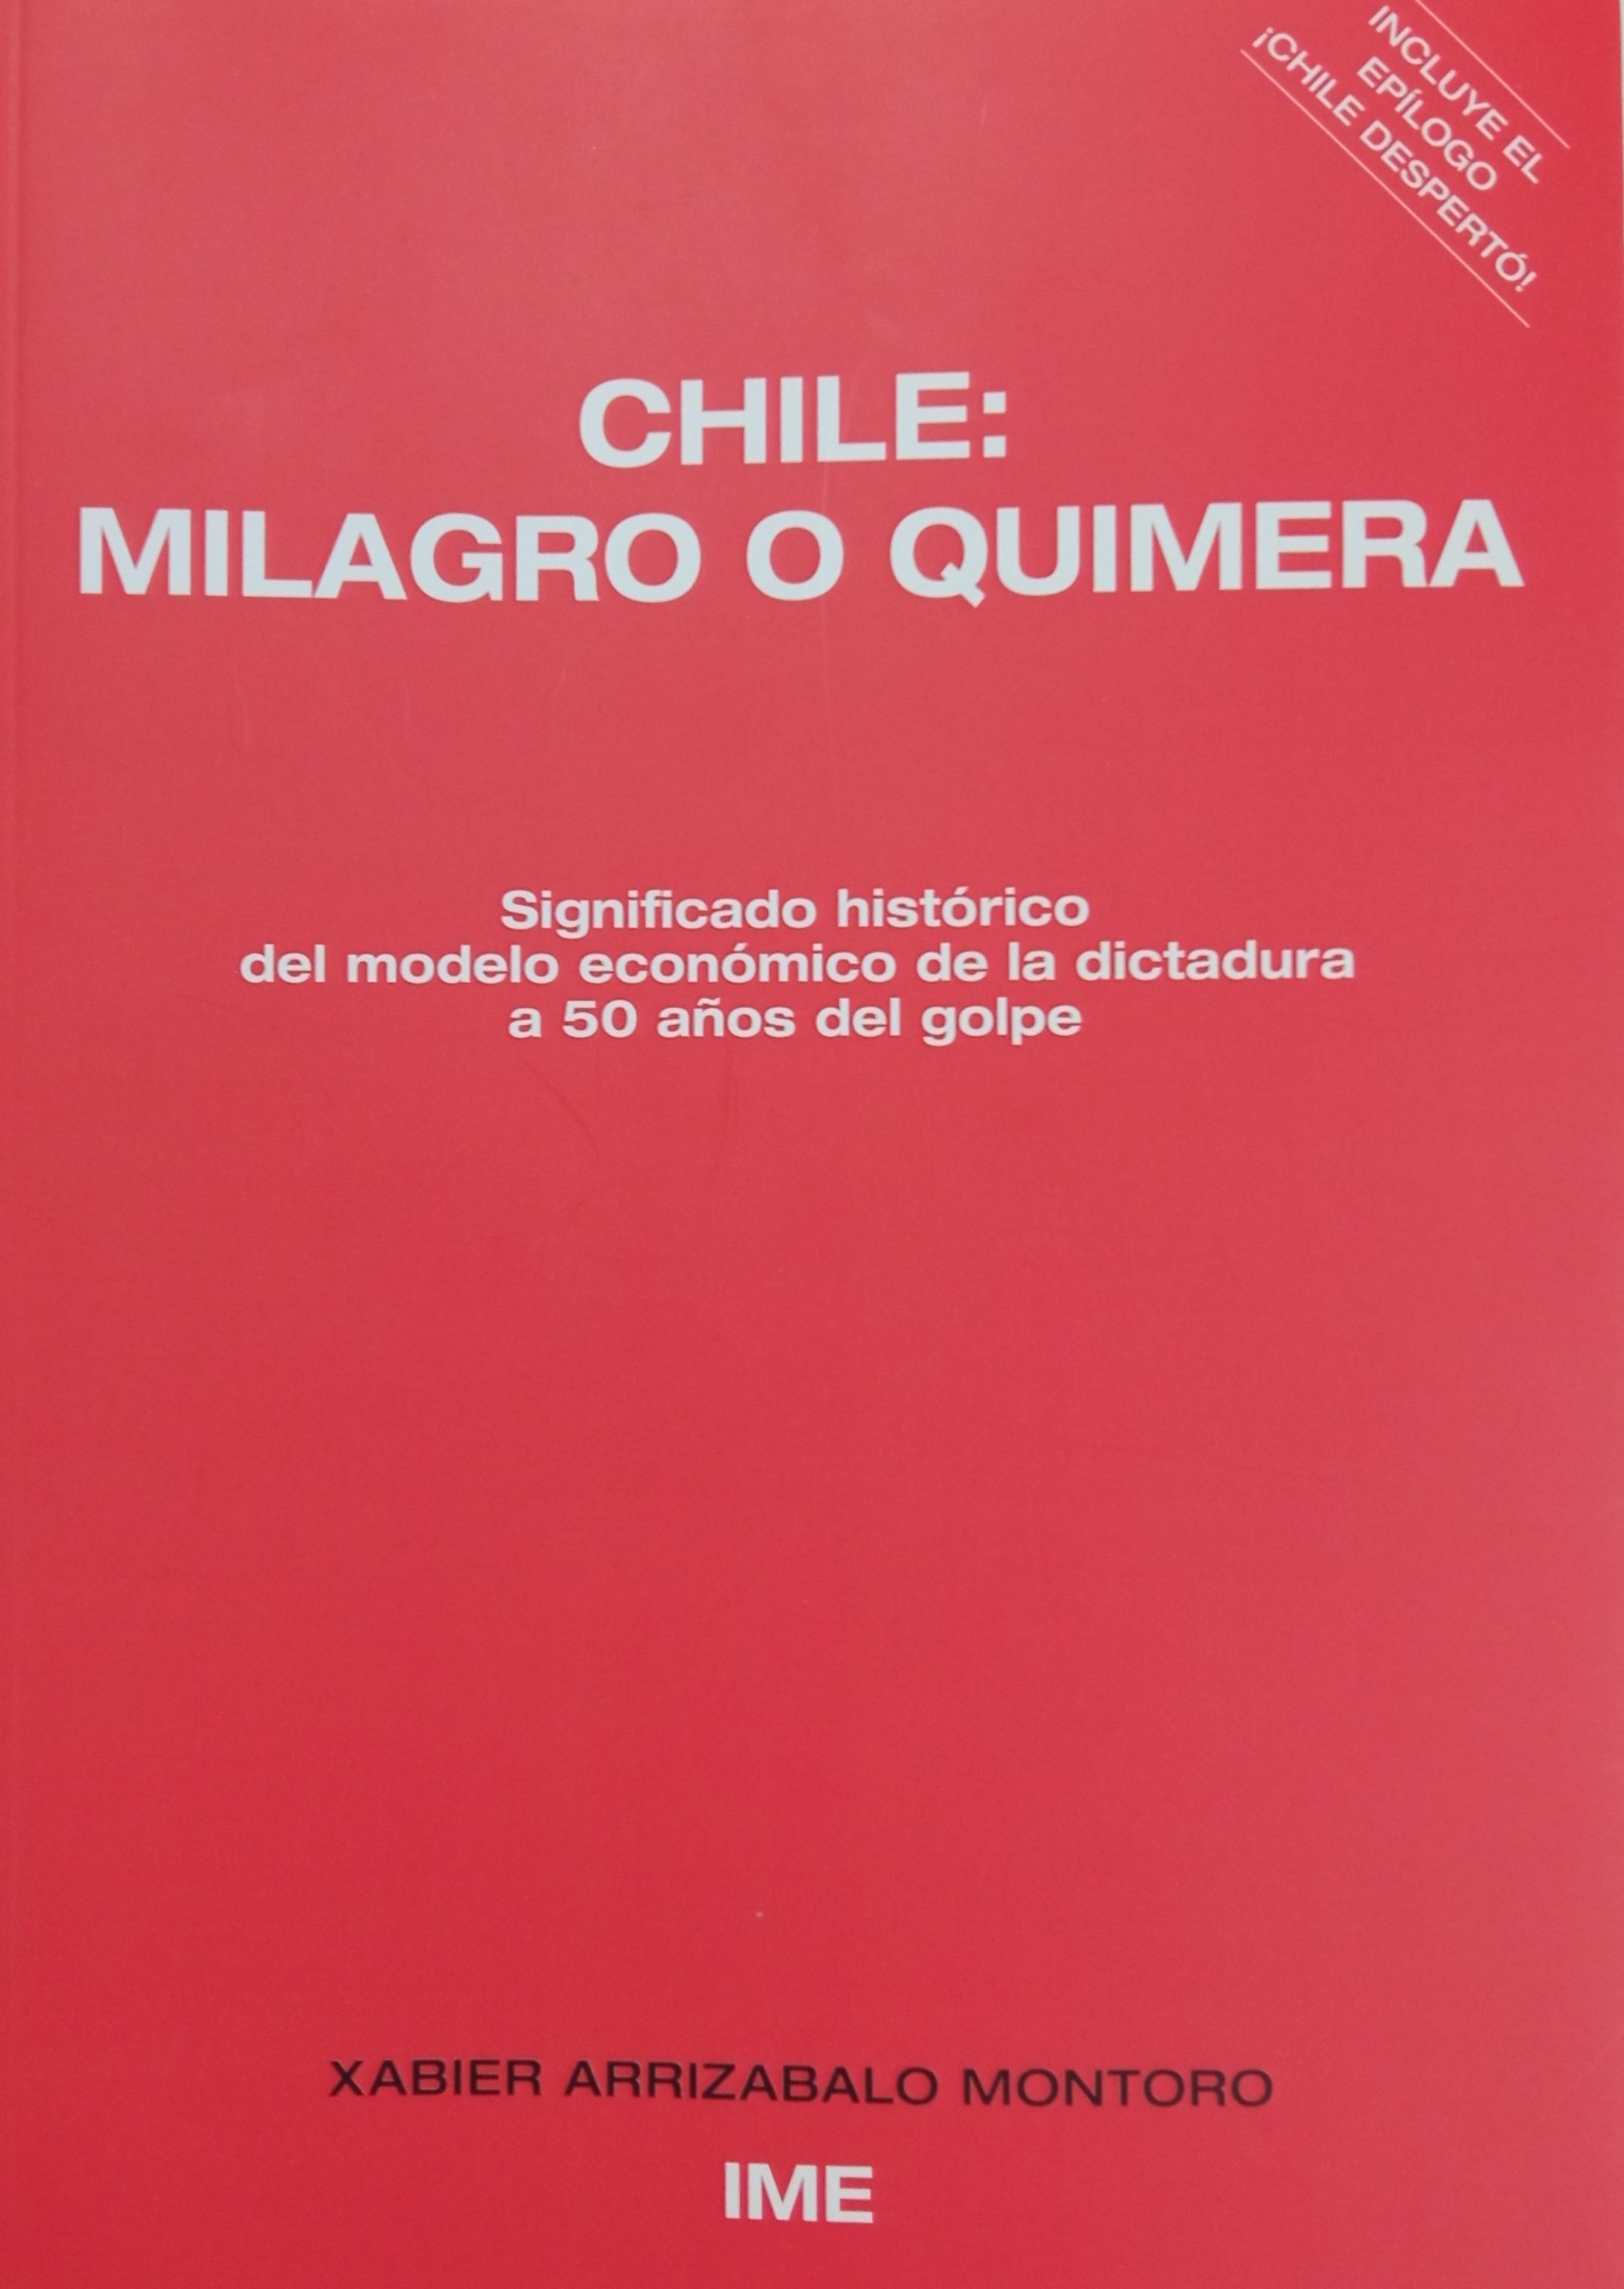 Chile: milagro o quimera "Significado histórico del modelo económico de la dictadura a 50 años del golpe"